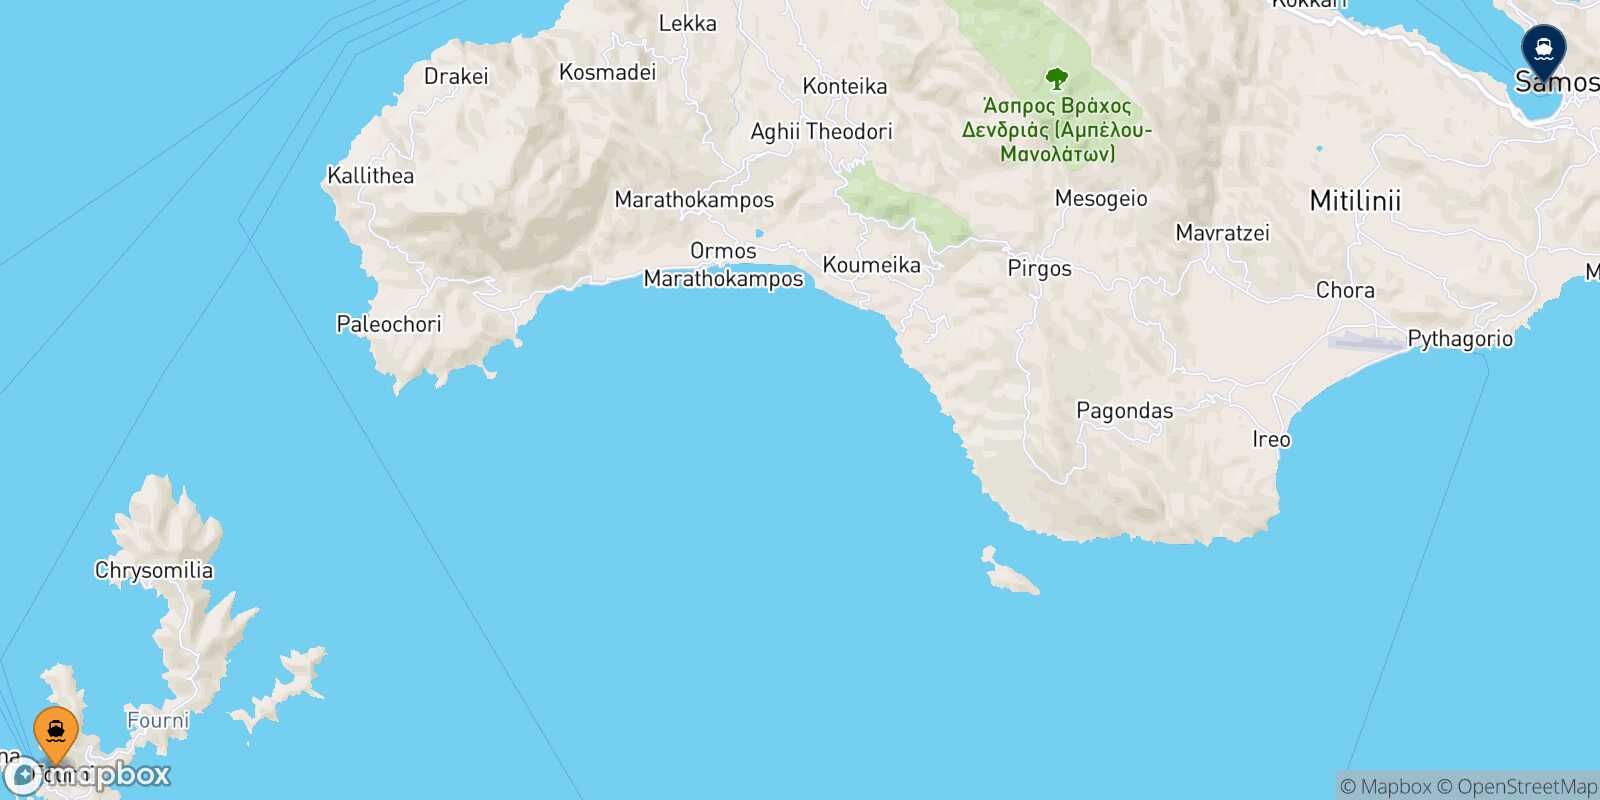 Fourni Vathi (Samos) route map